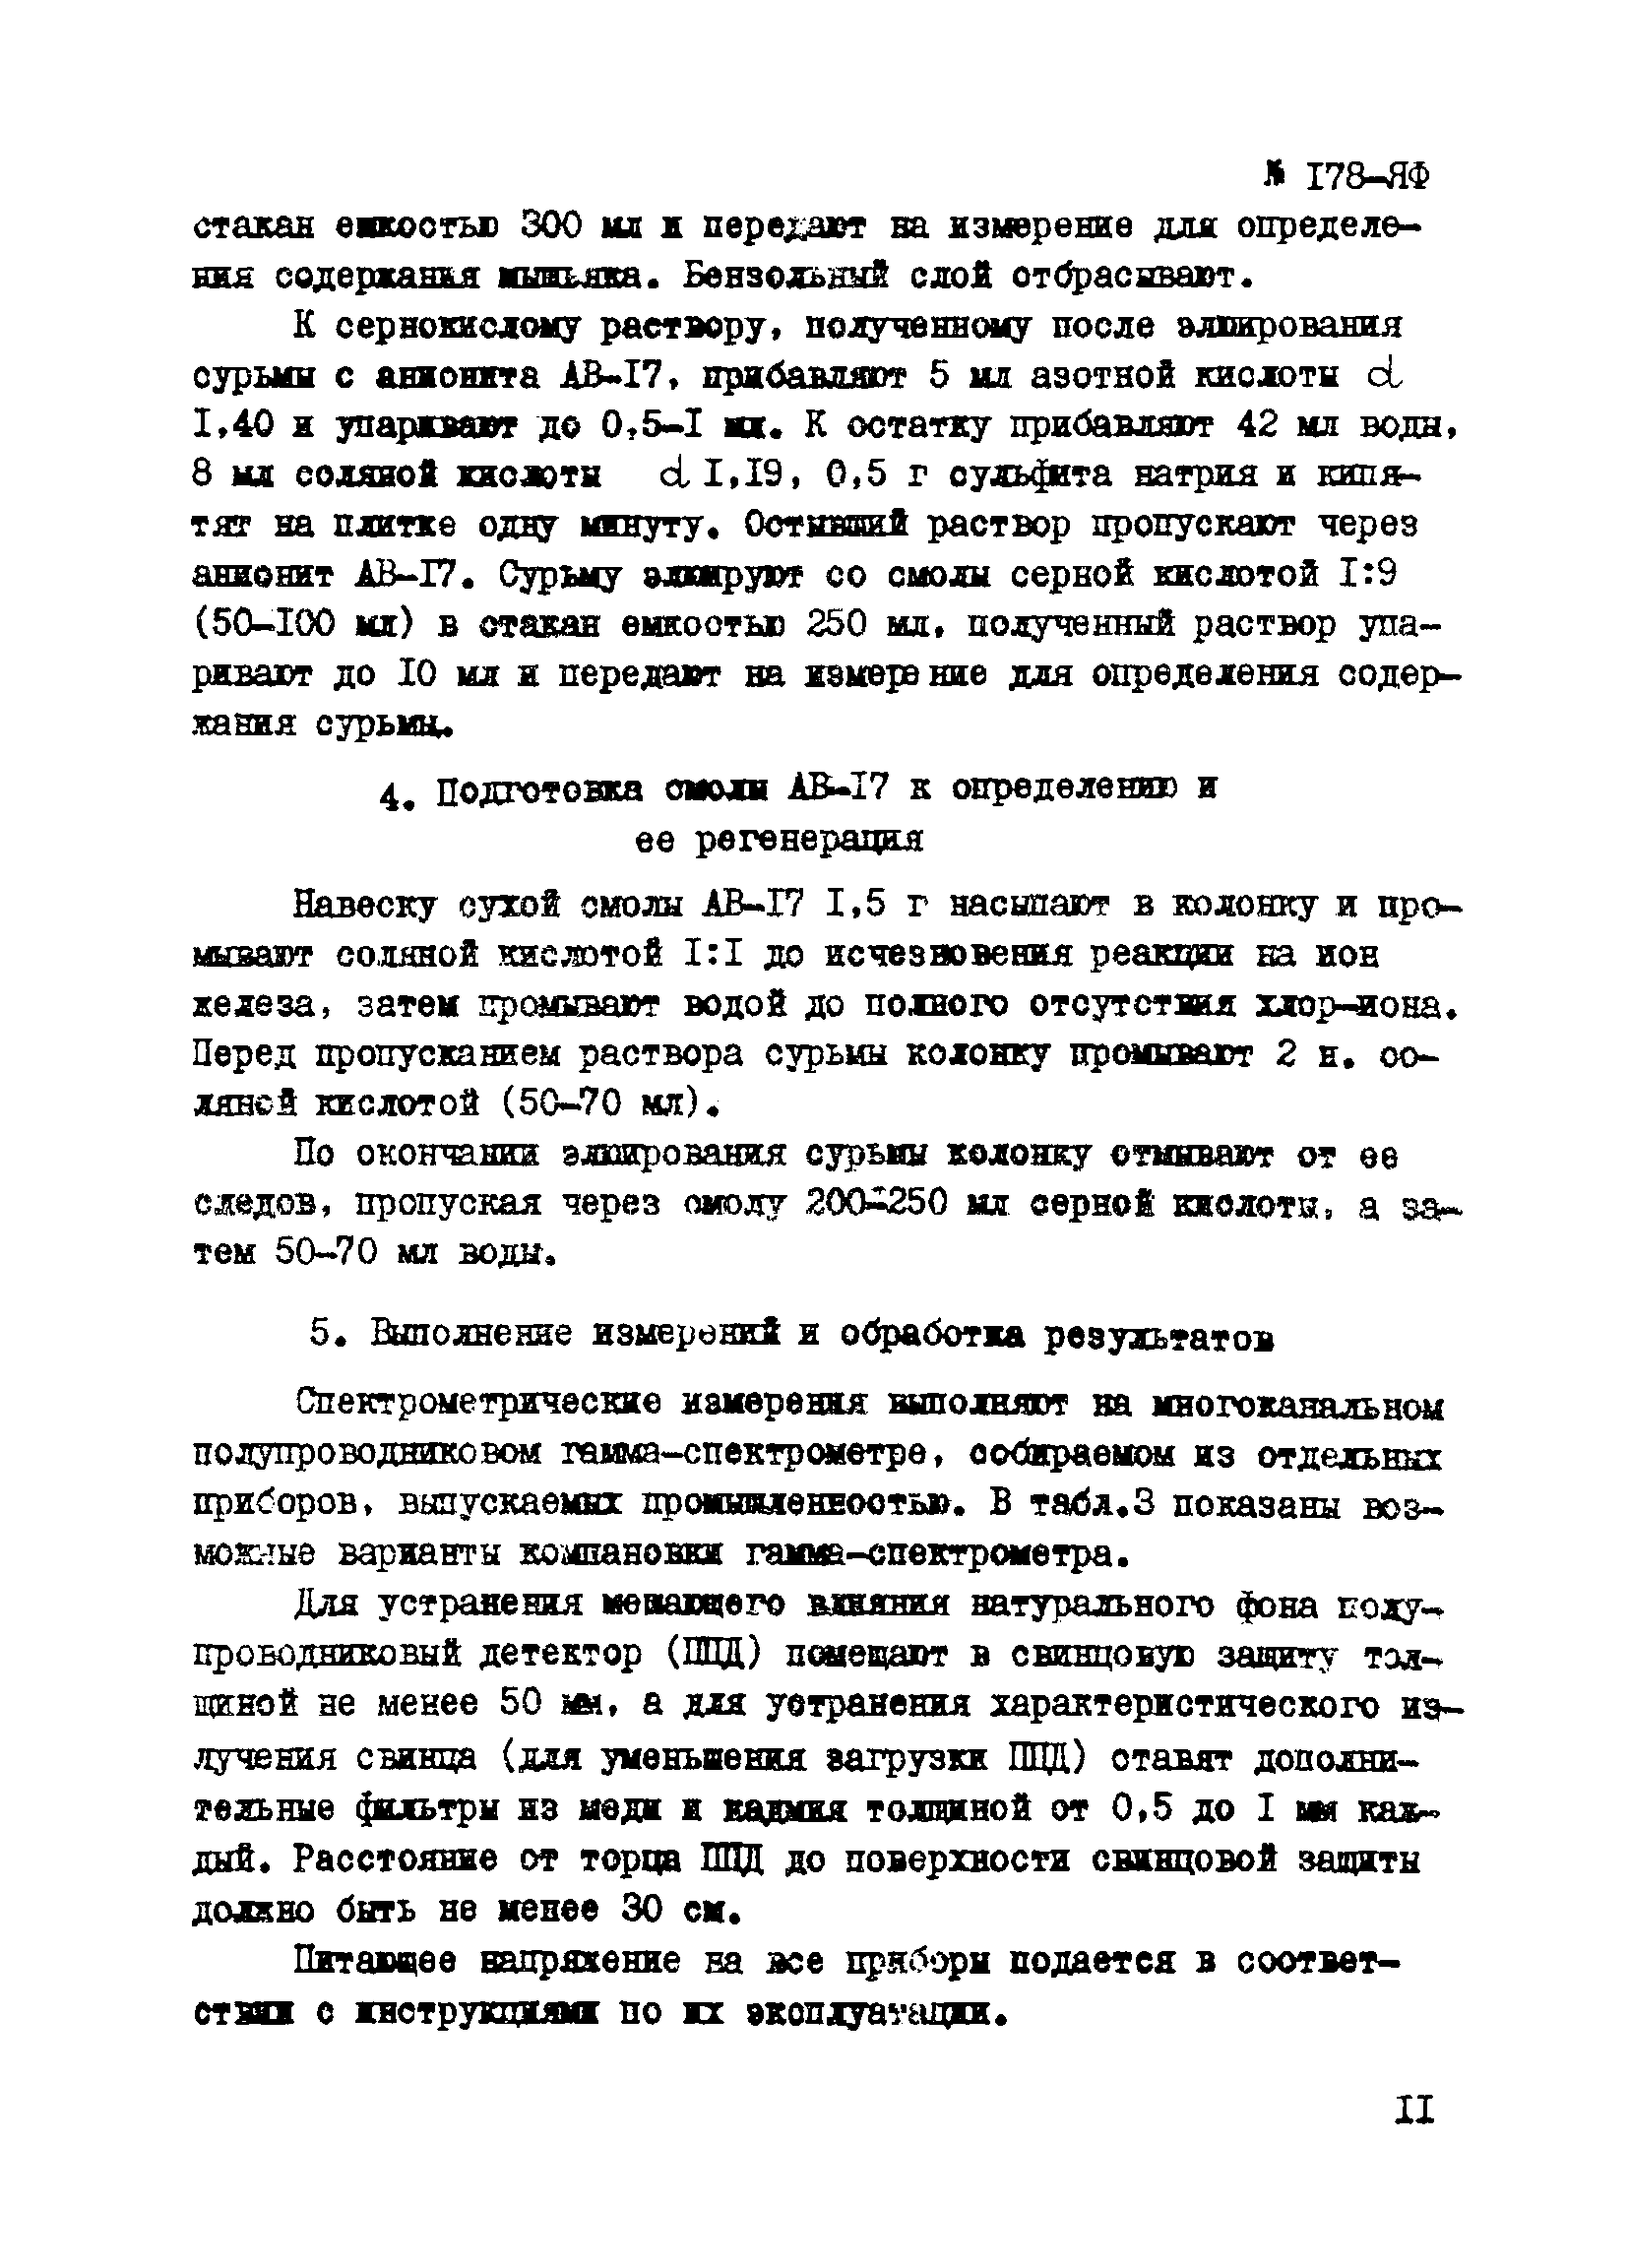 Инструкция НСАМ 178-ЯФ